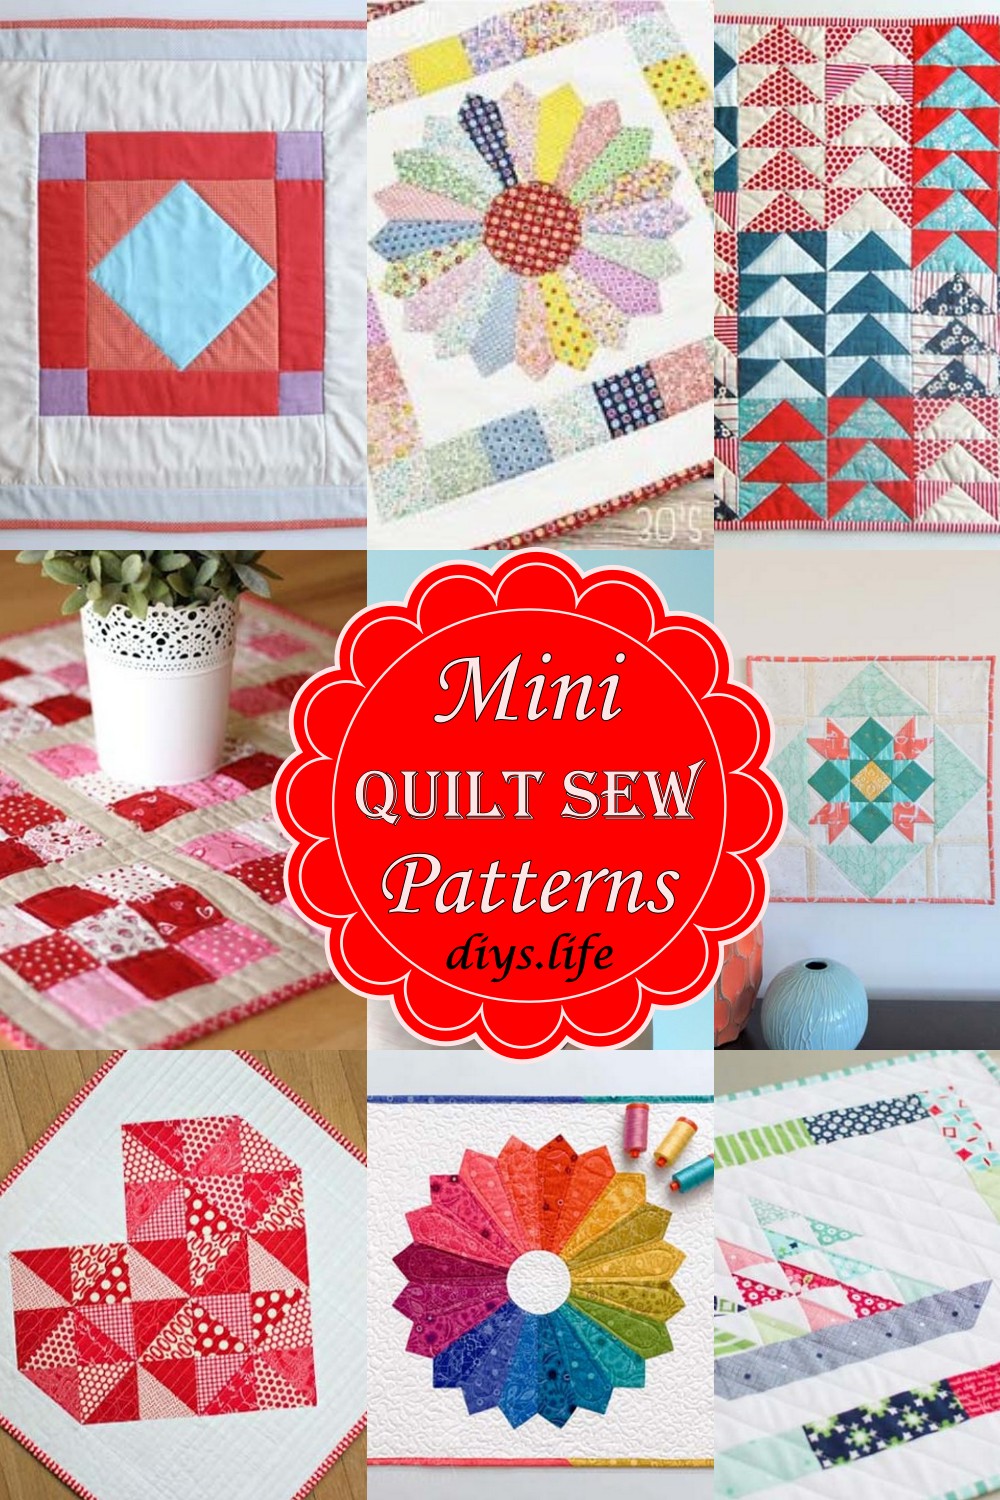 Mini Quilt Sew Patterns